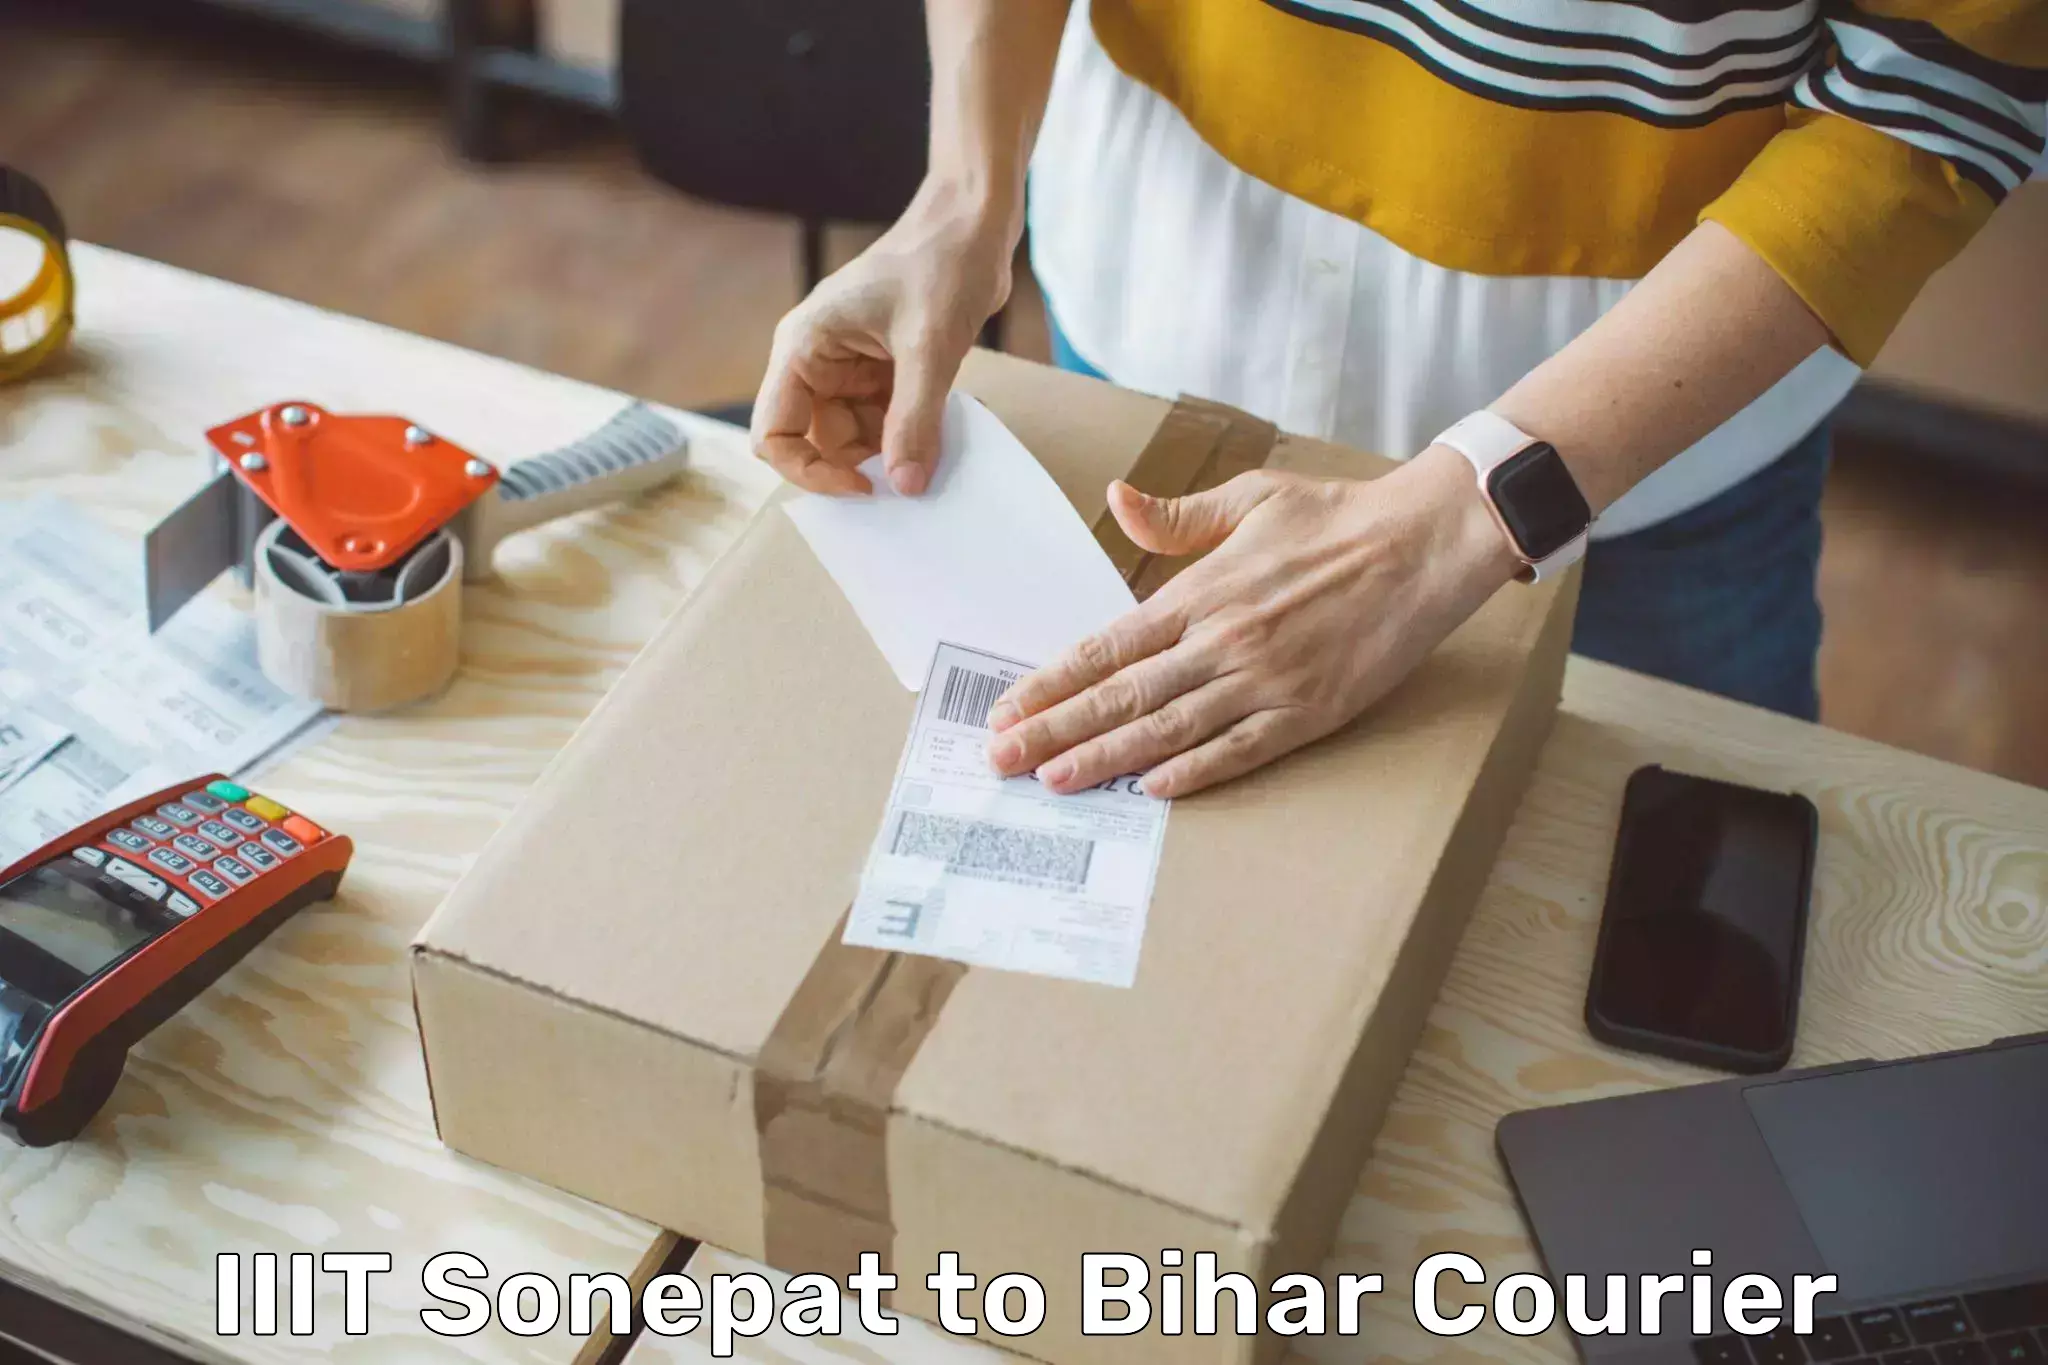 On-demand delivery IIIT Sonepat to Bikramganj